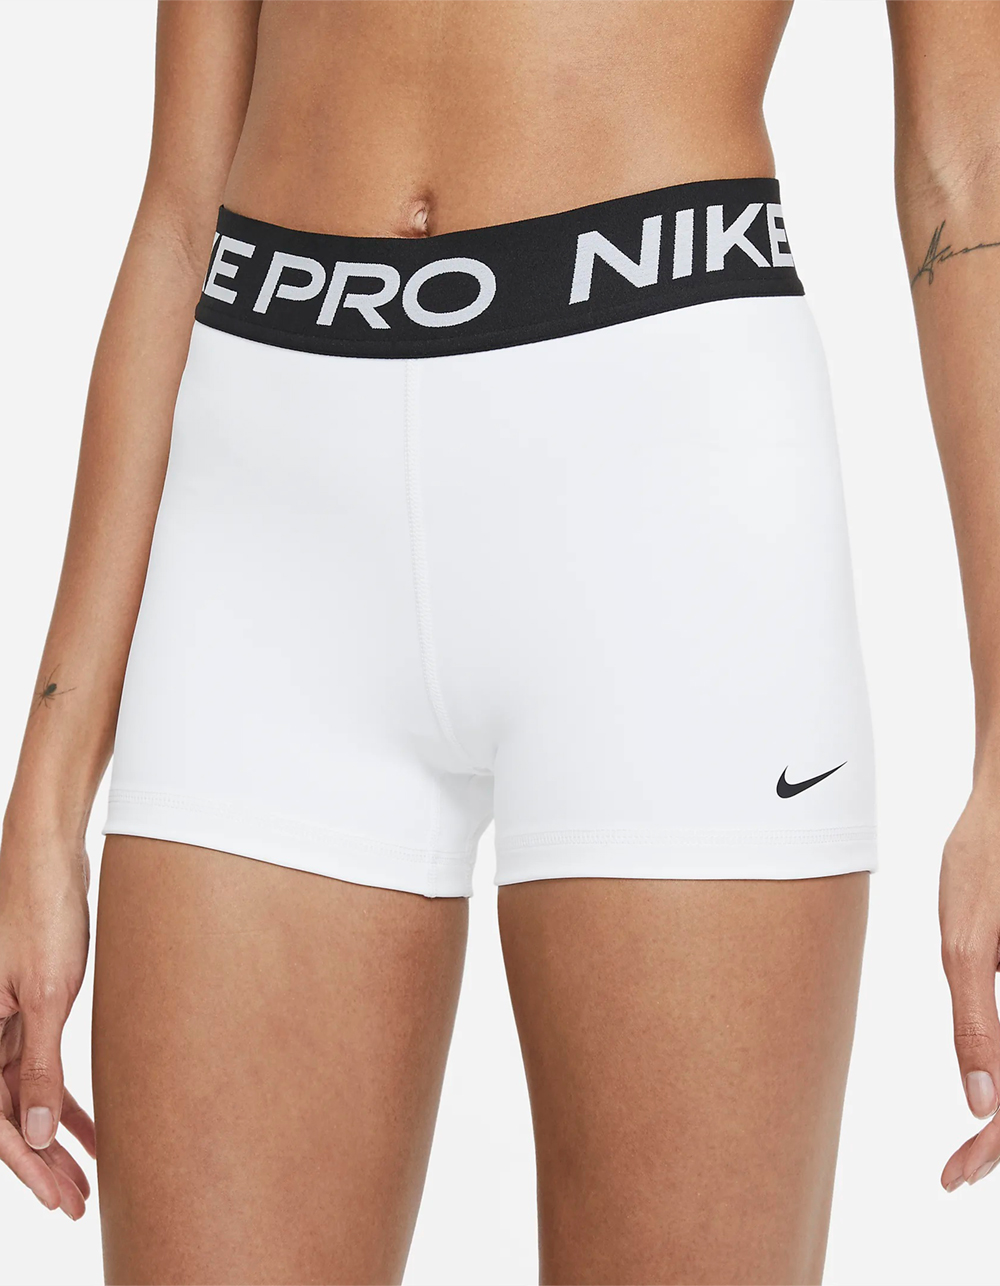 Nike Pro Underwear Women